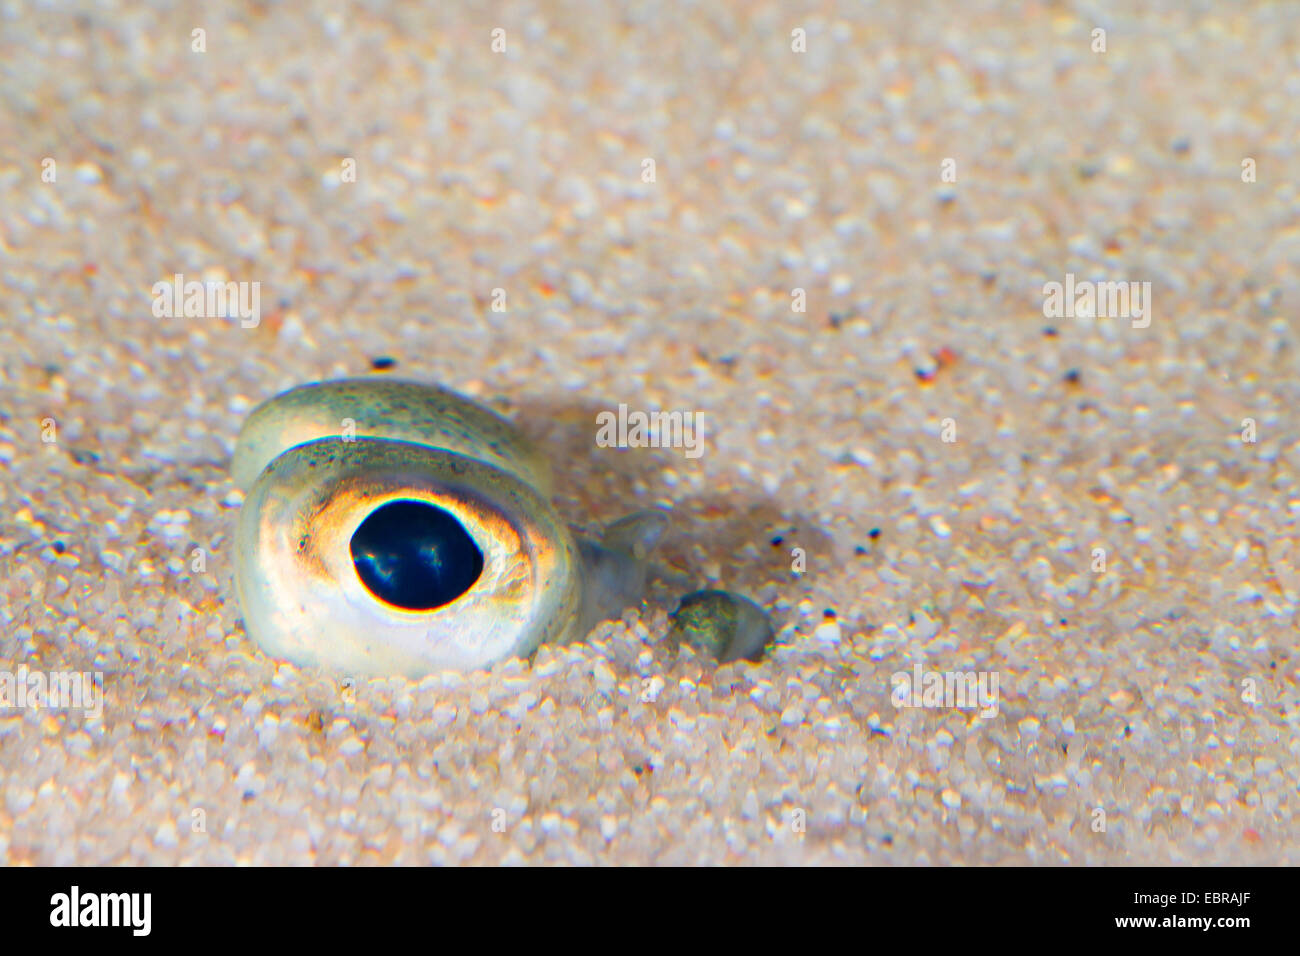 La plie, plie (Pleuronectes platessa), creusés dans le sable que les yeux peut être vu Banque D'Images